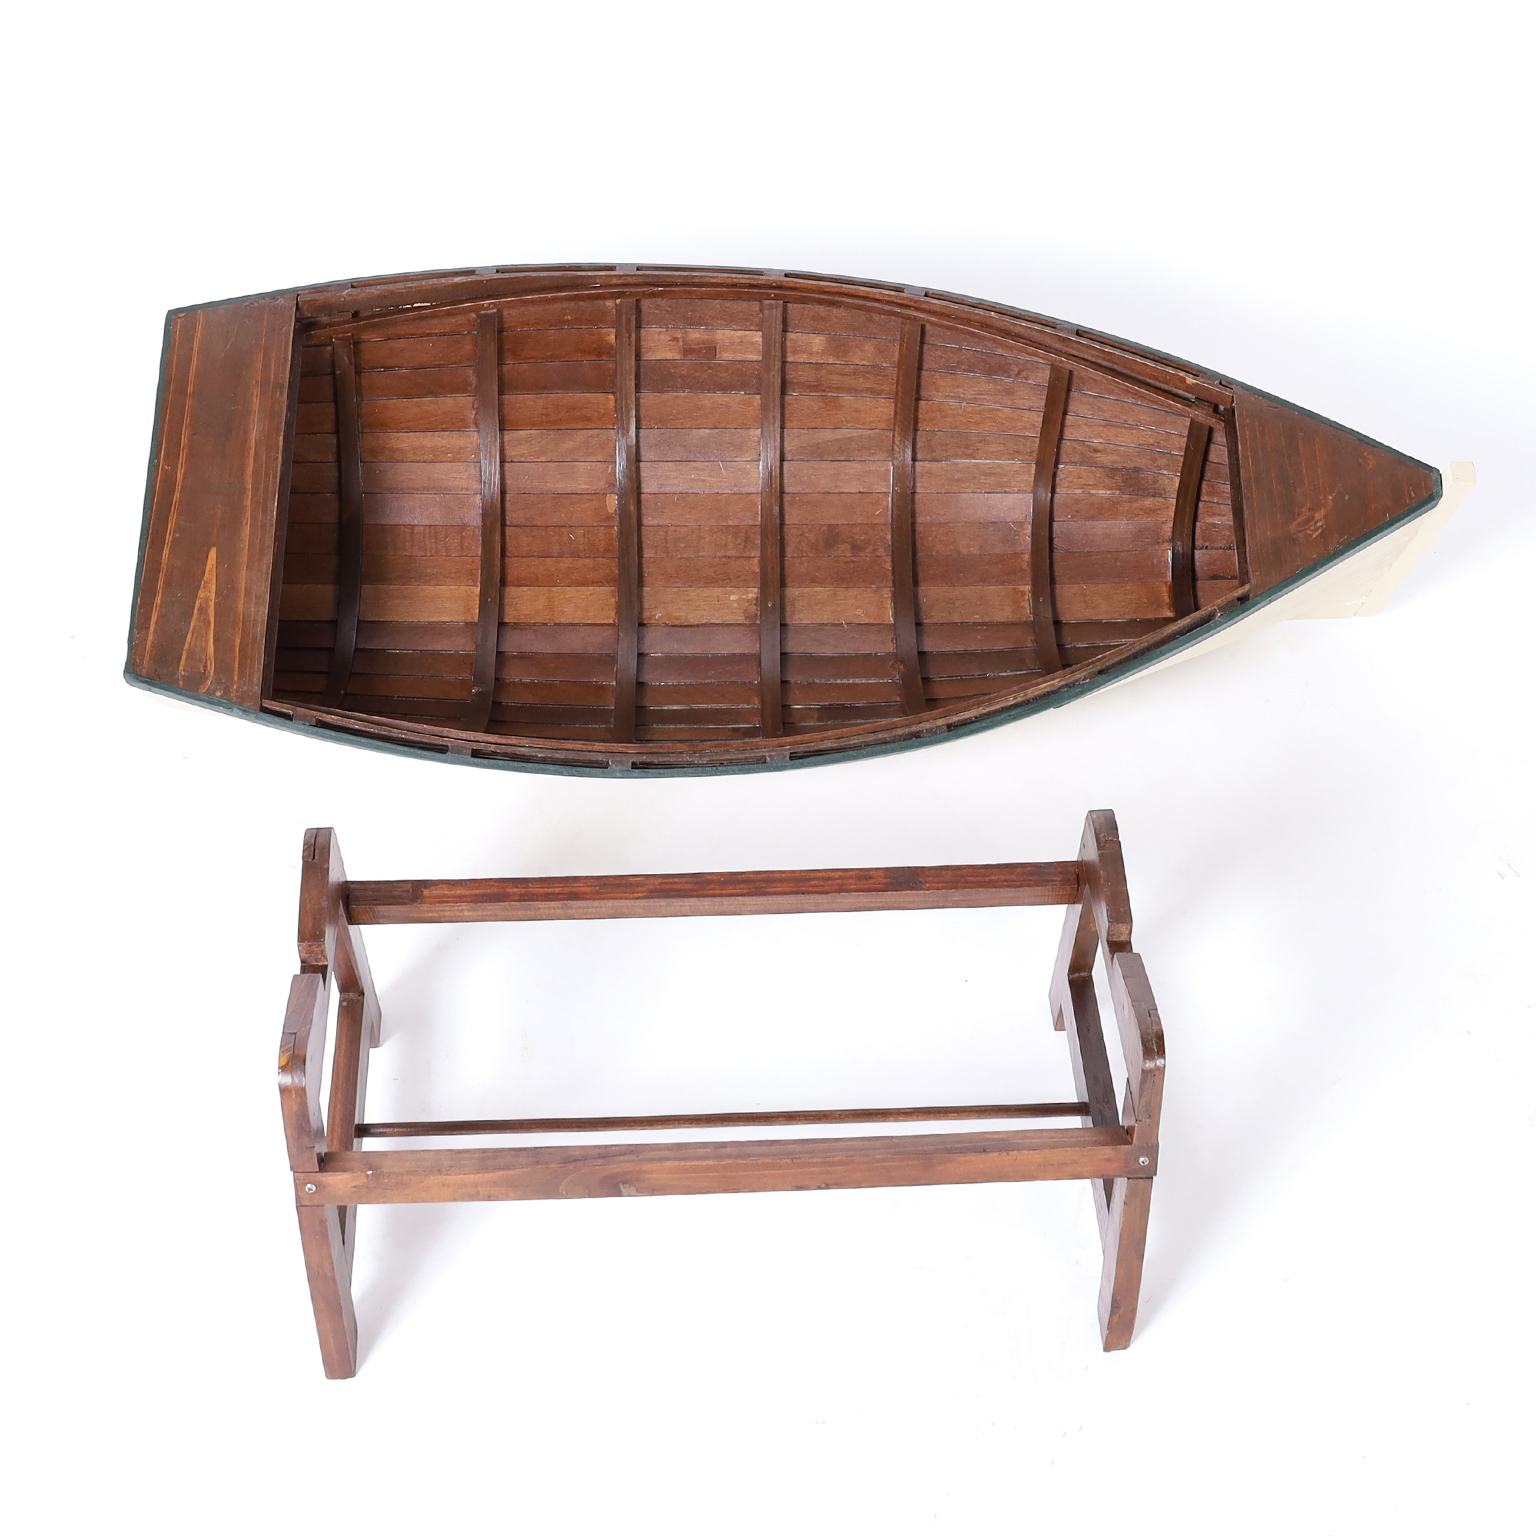 Large Vintage Row Boat or Dinghy Model